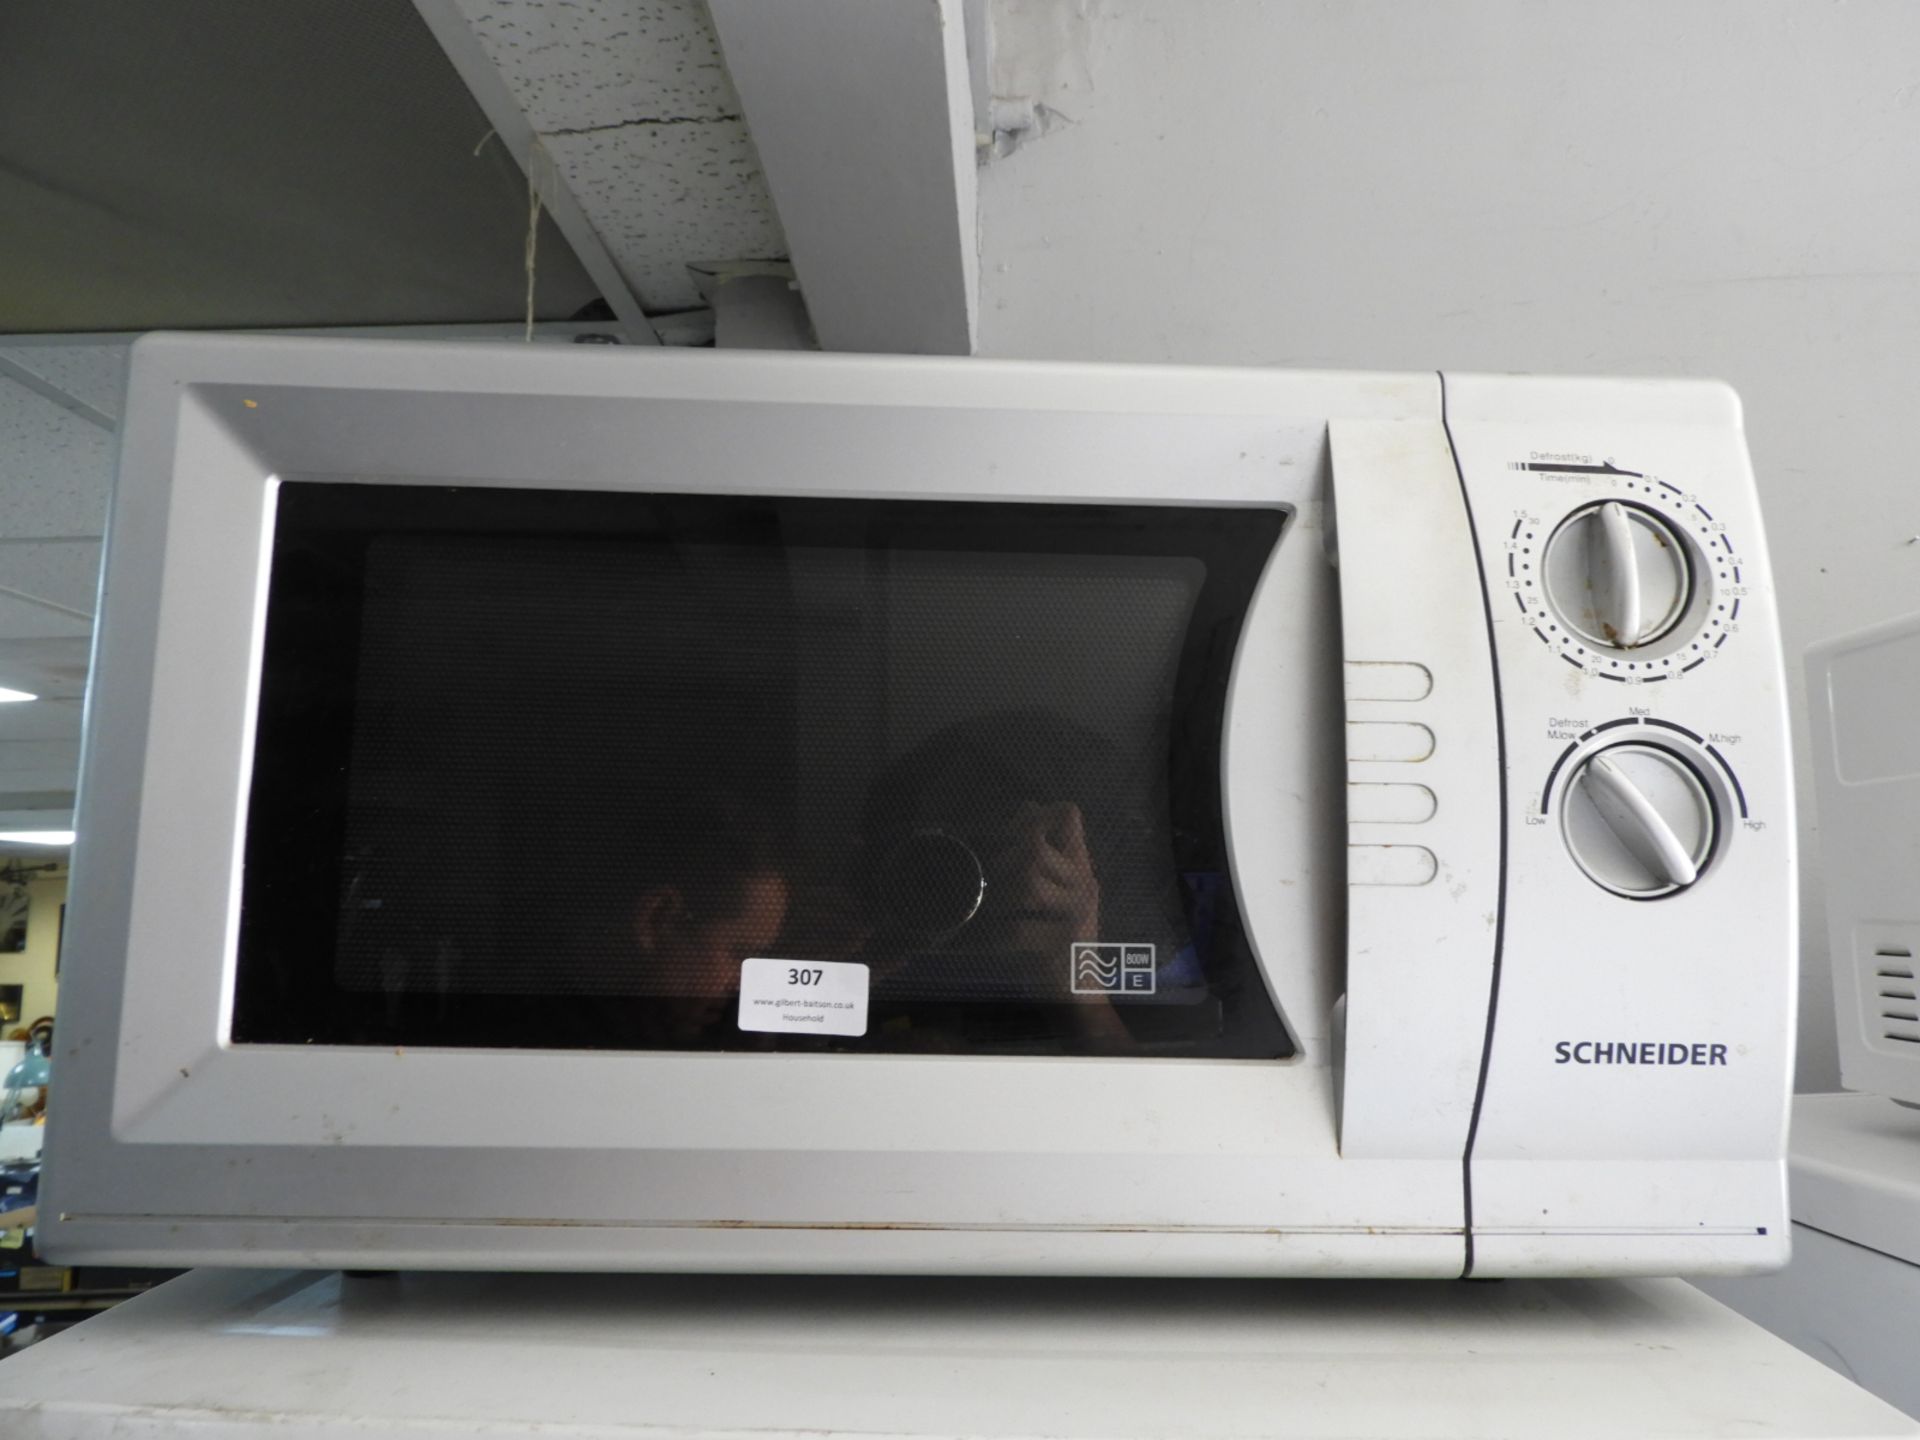 Schneider Microwave Oven